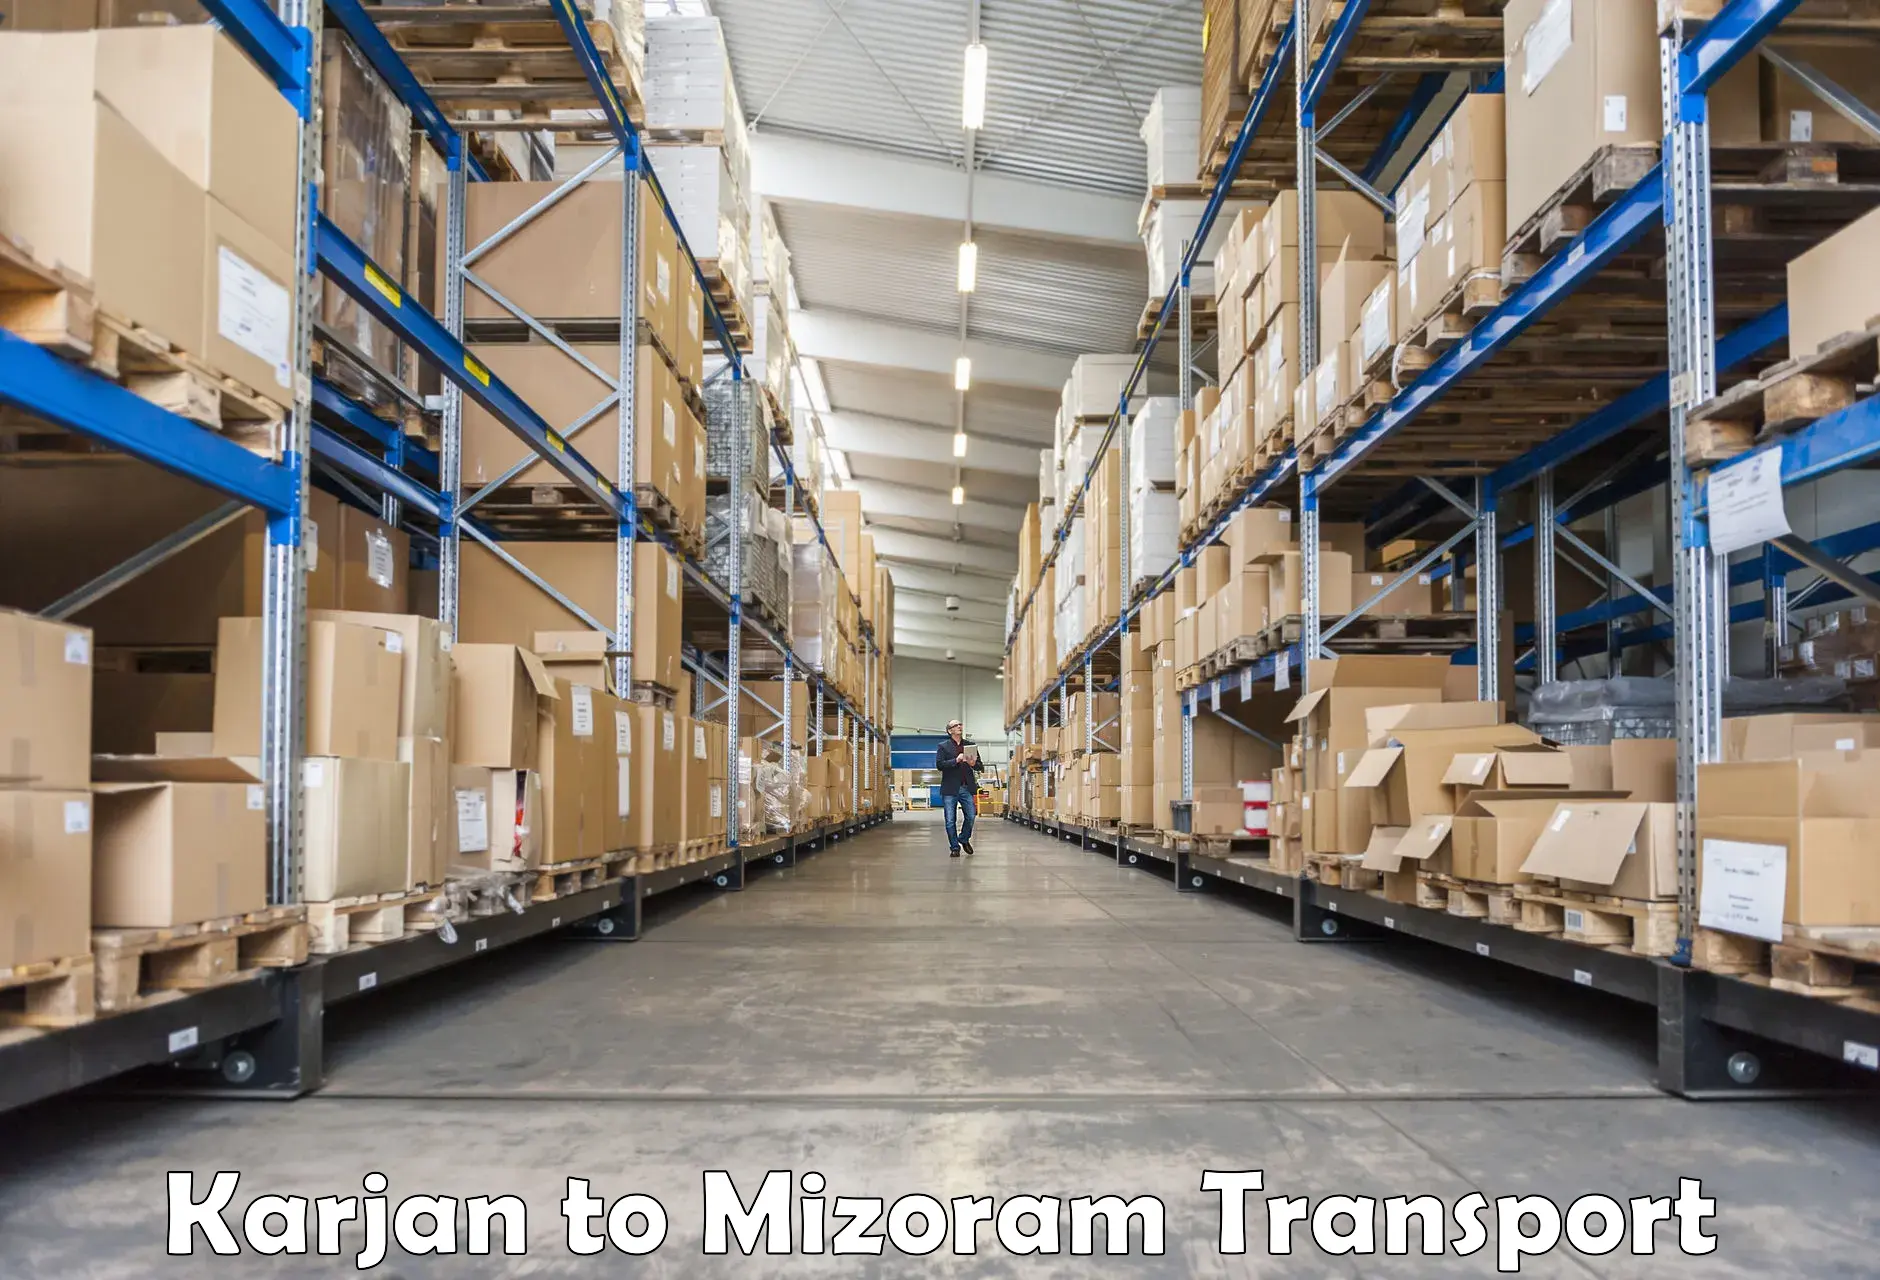 Vehicle transport services Karjan to Mizoram